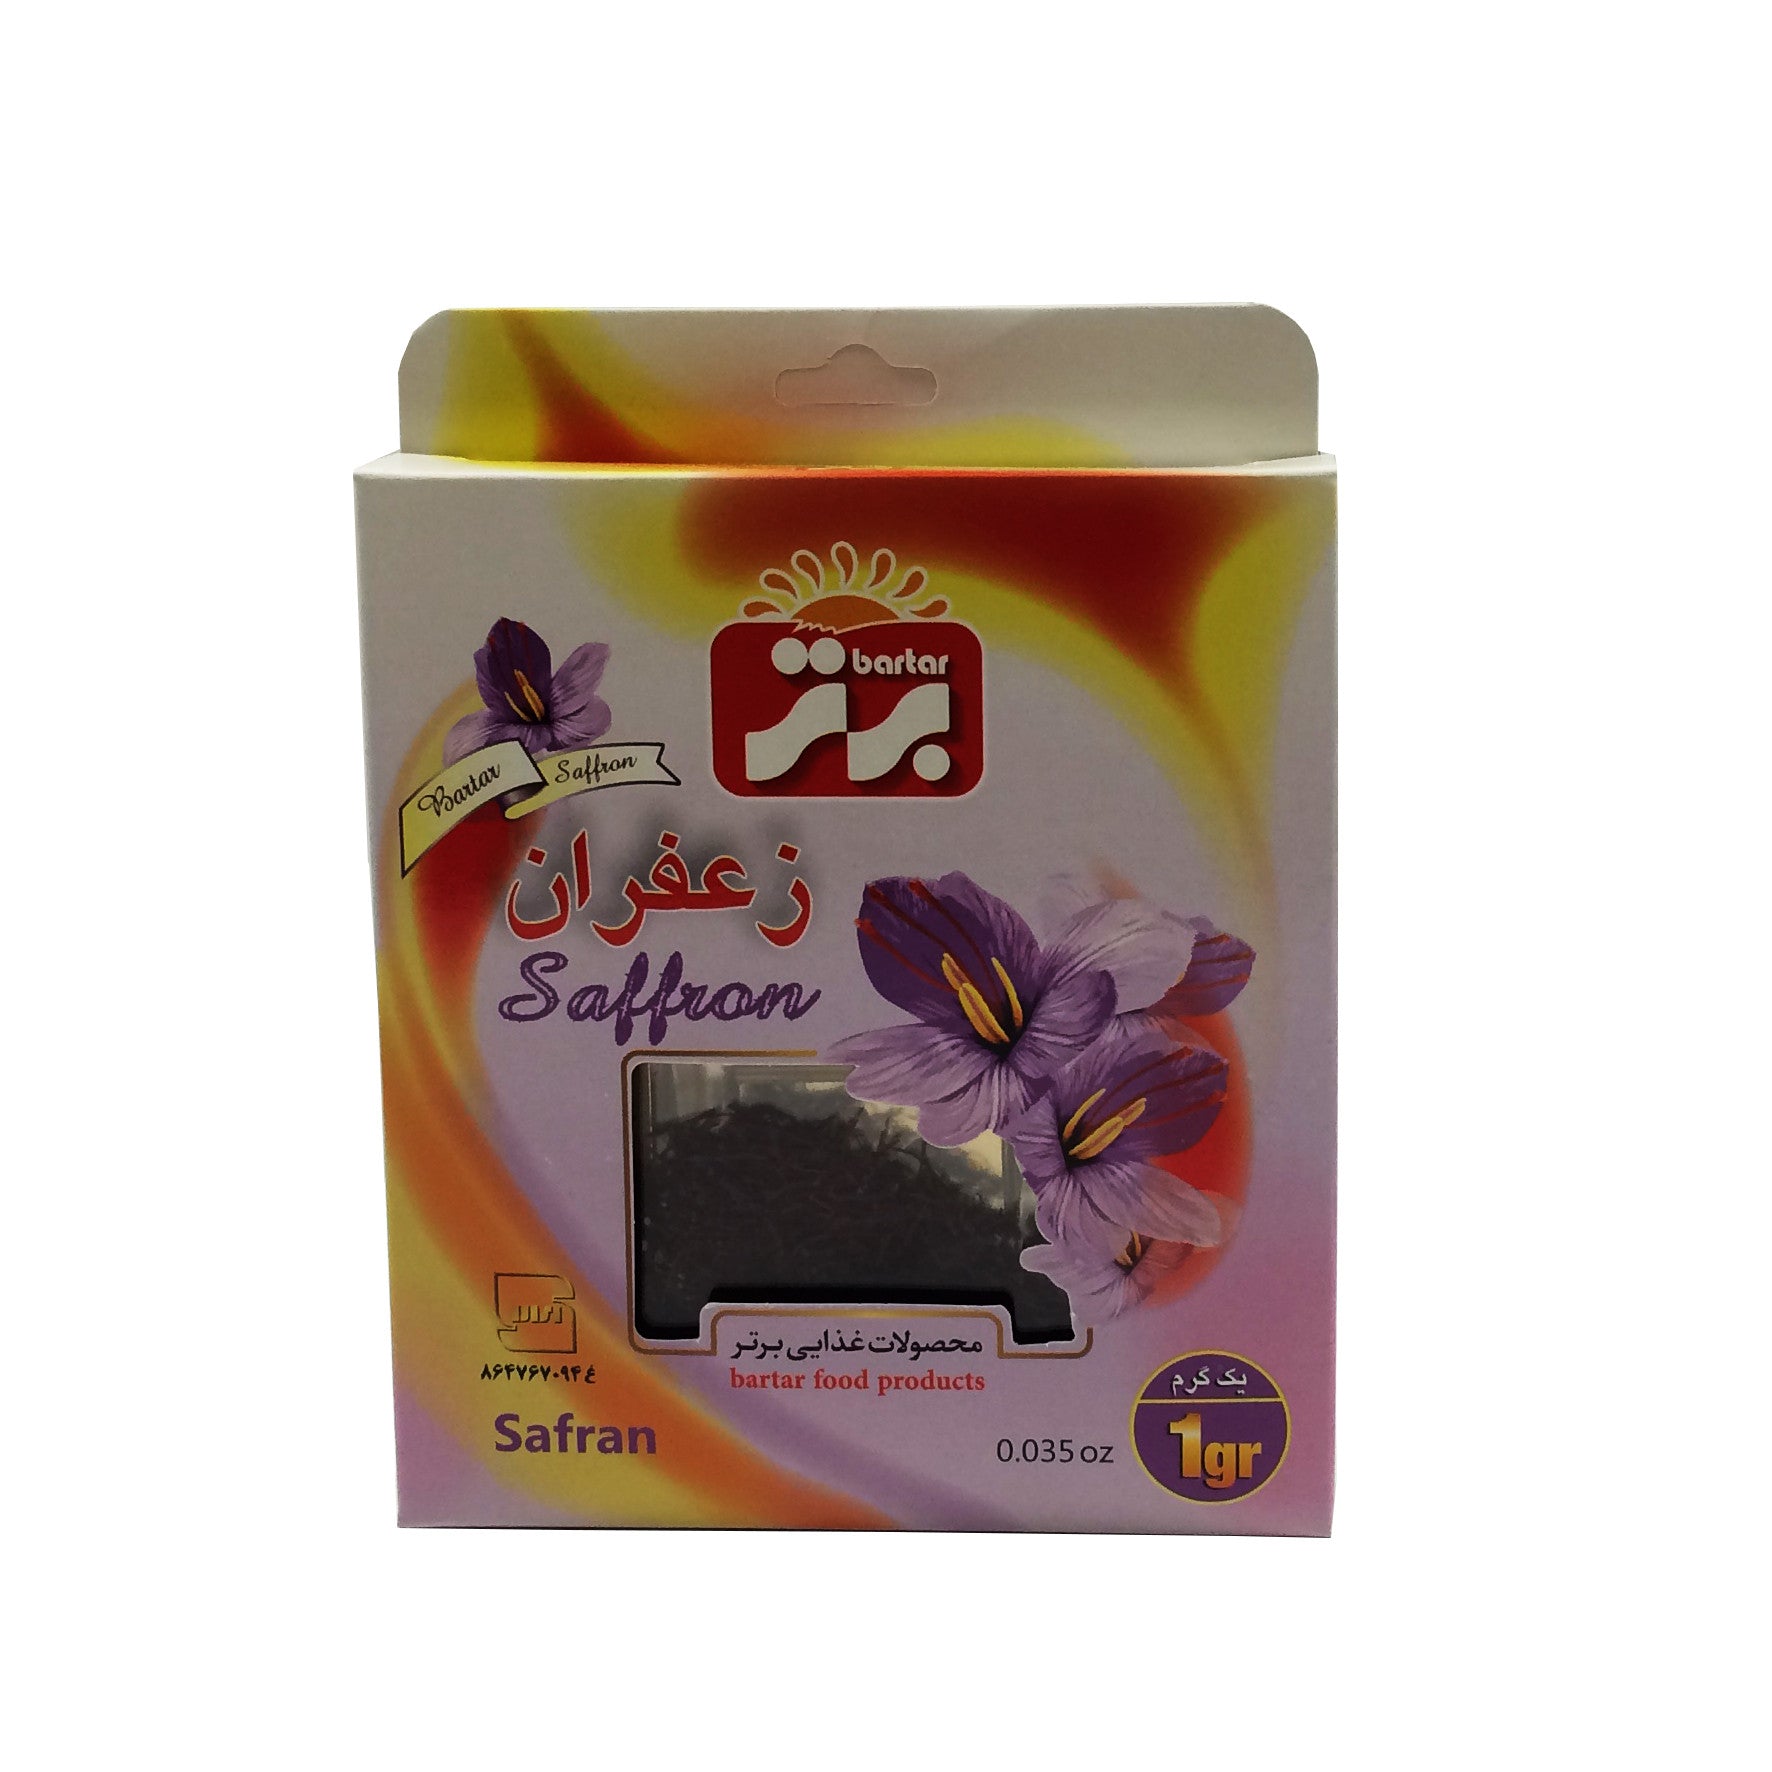 Saffron (1 g) - Specialty Goodies